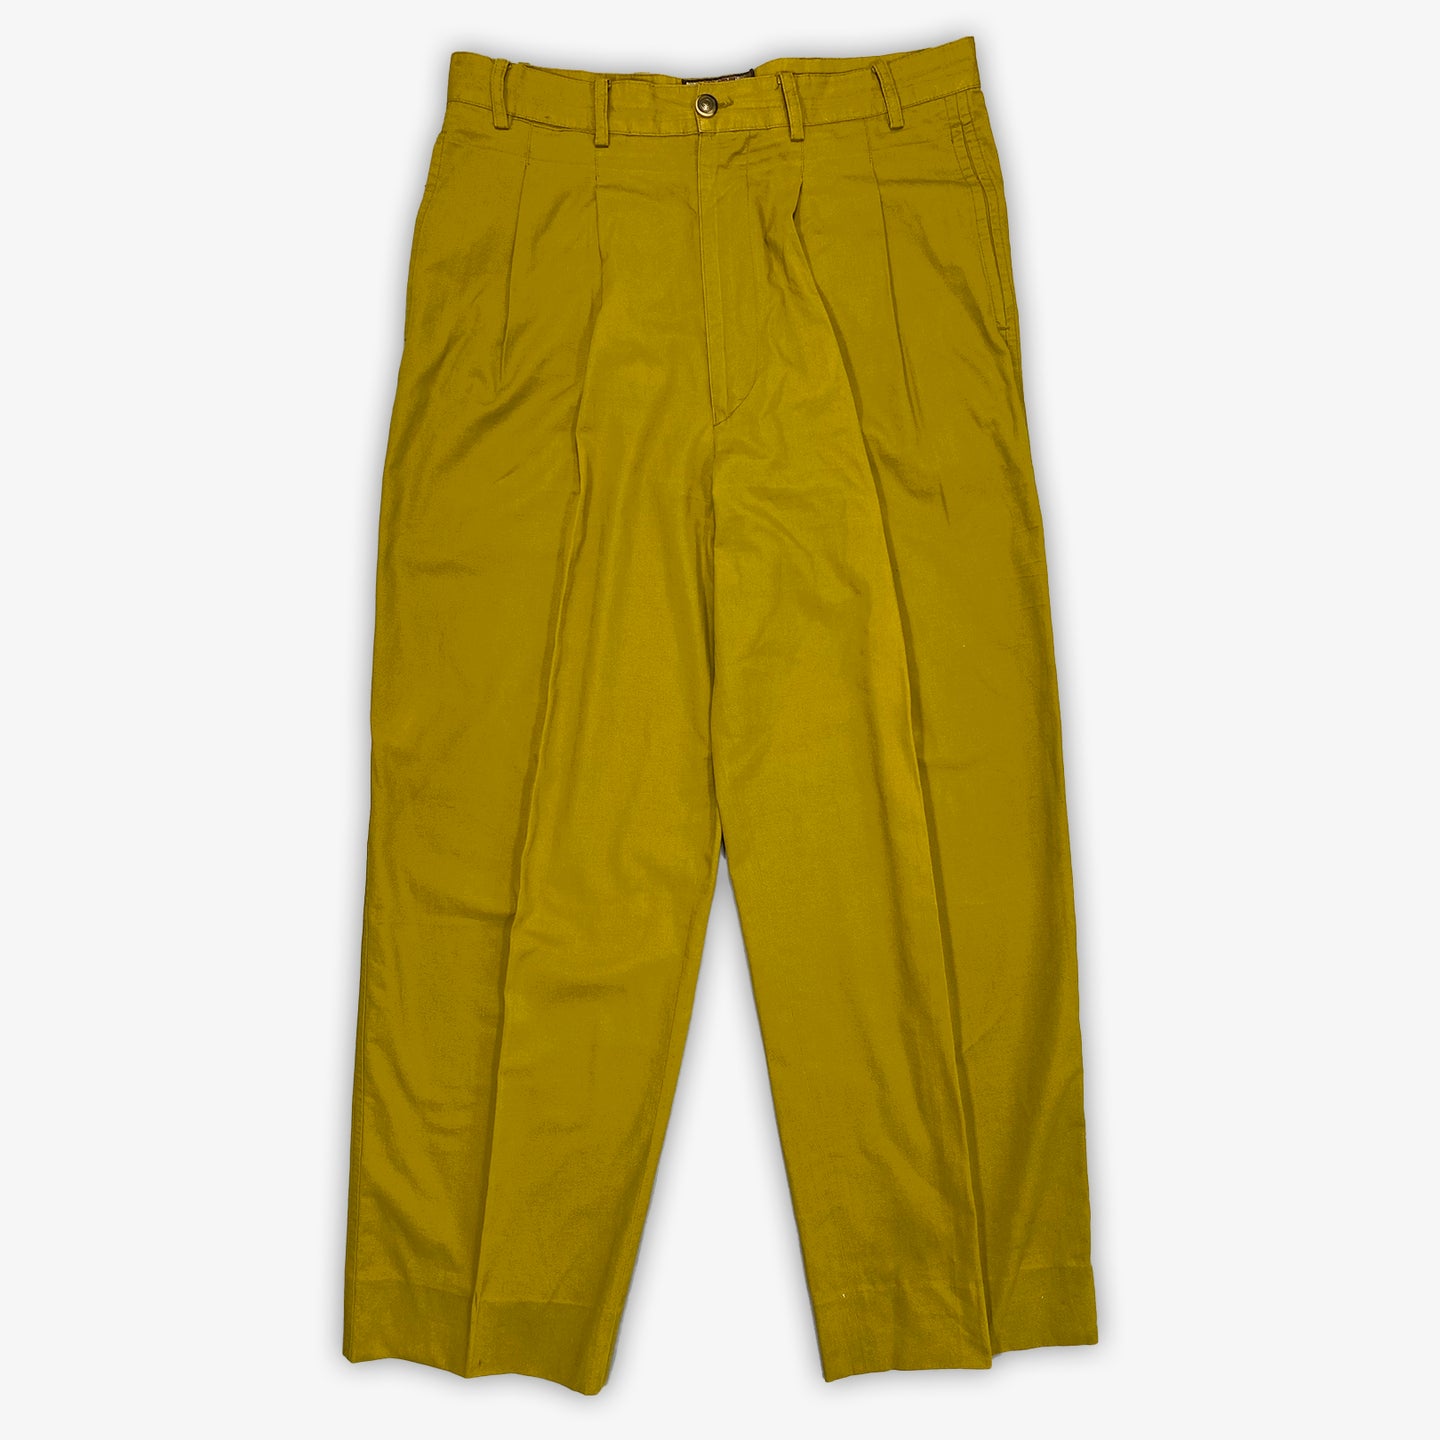 Armani Trousers (Yellow)